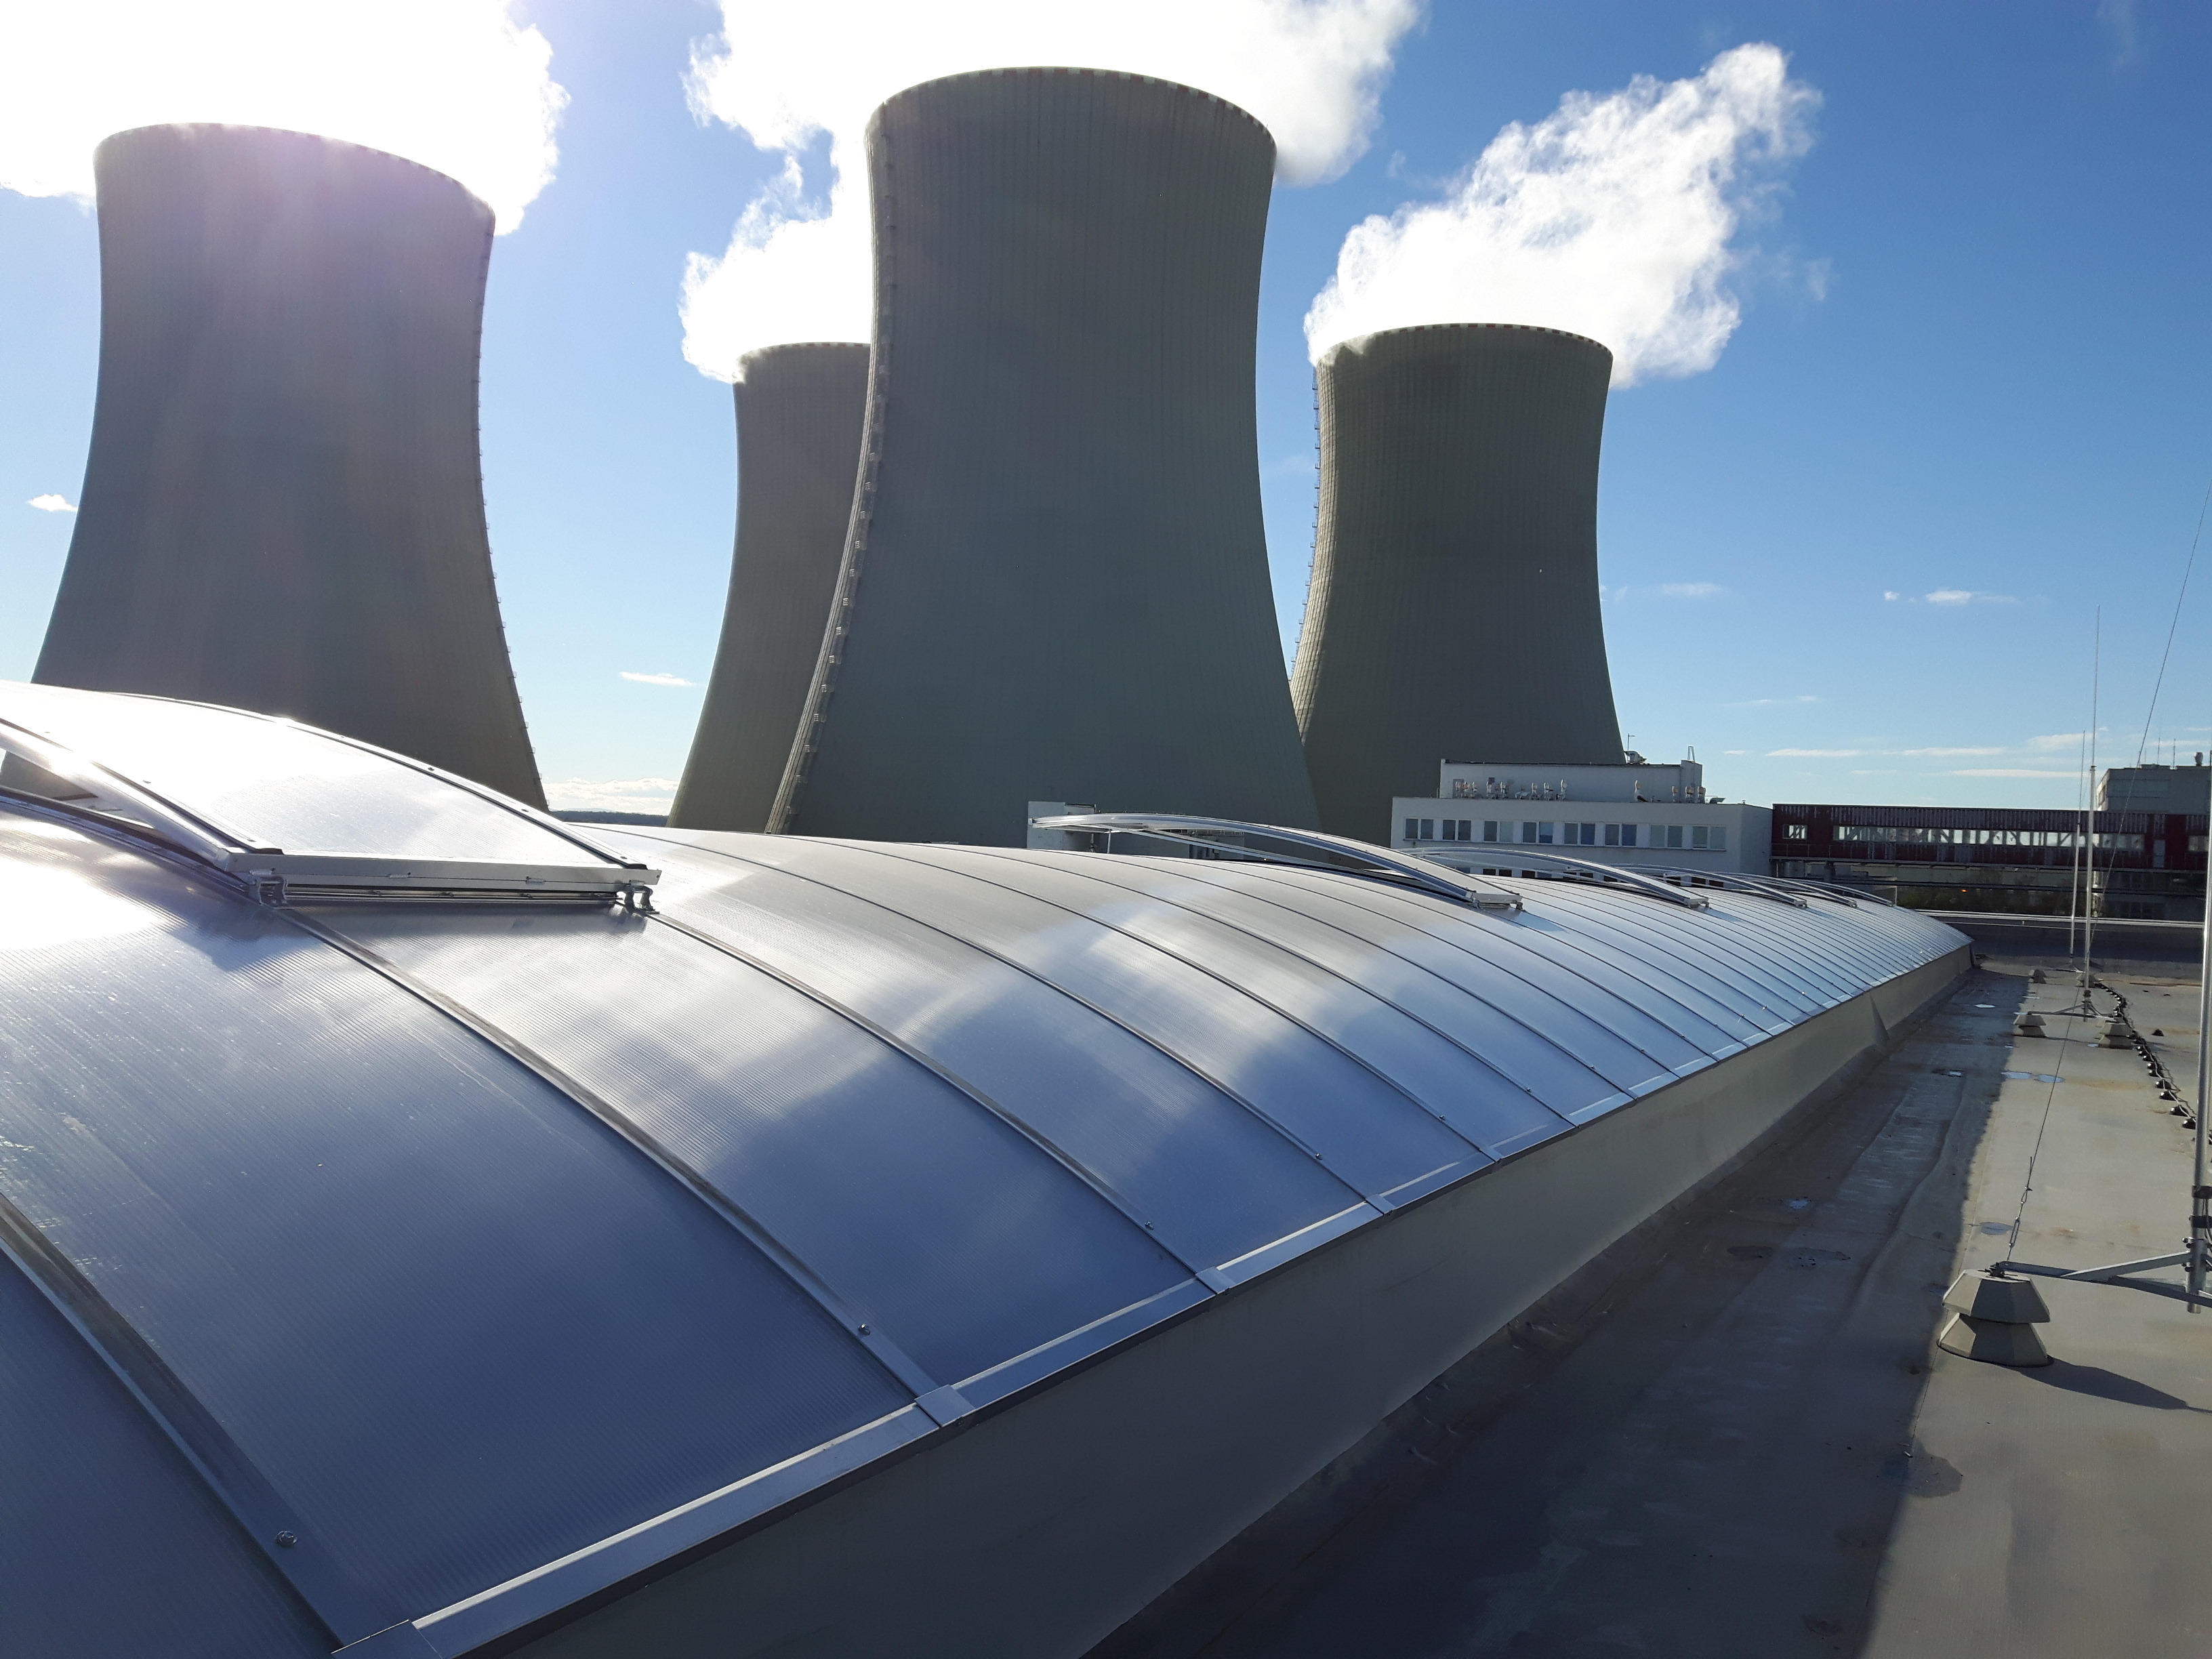 Jaderná elektrárna Temelín – revitalizace vstupní haly administrativní budovy - Visokogradnja